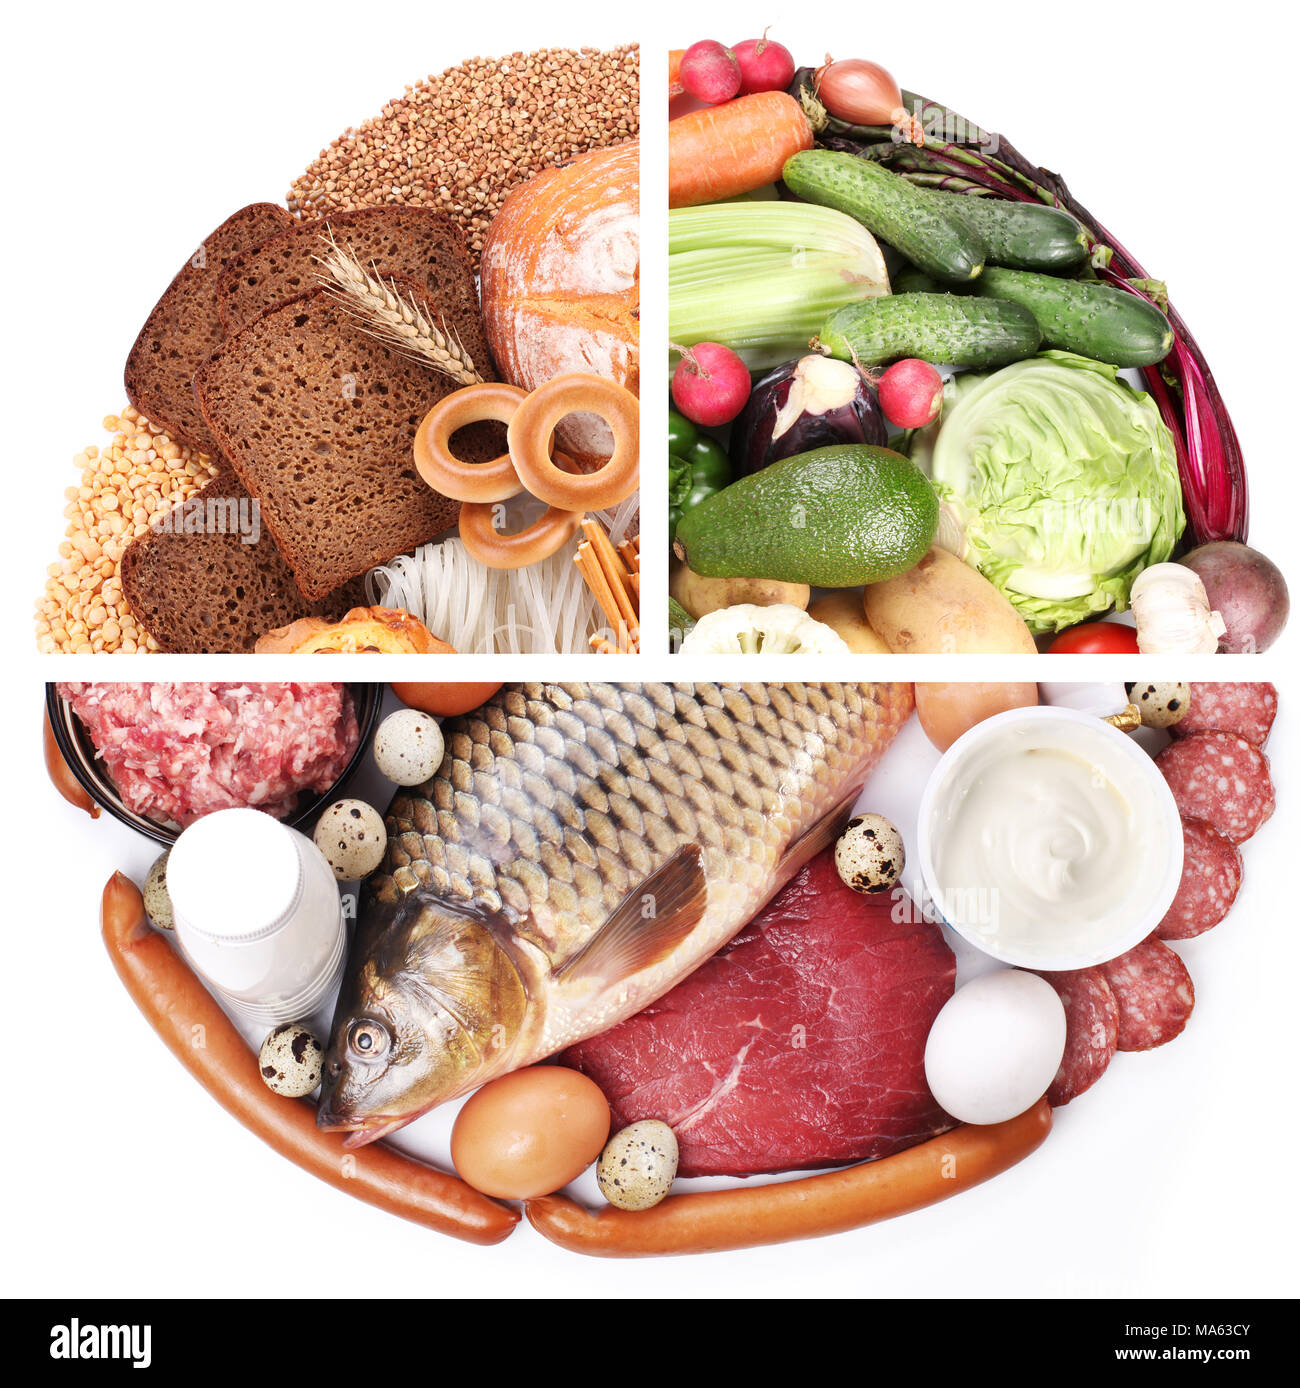 La piramide alimentare o dieta pyramid - schema di base presenta gruppi di alimenti. Foto Stock